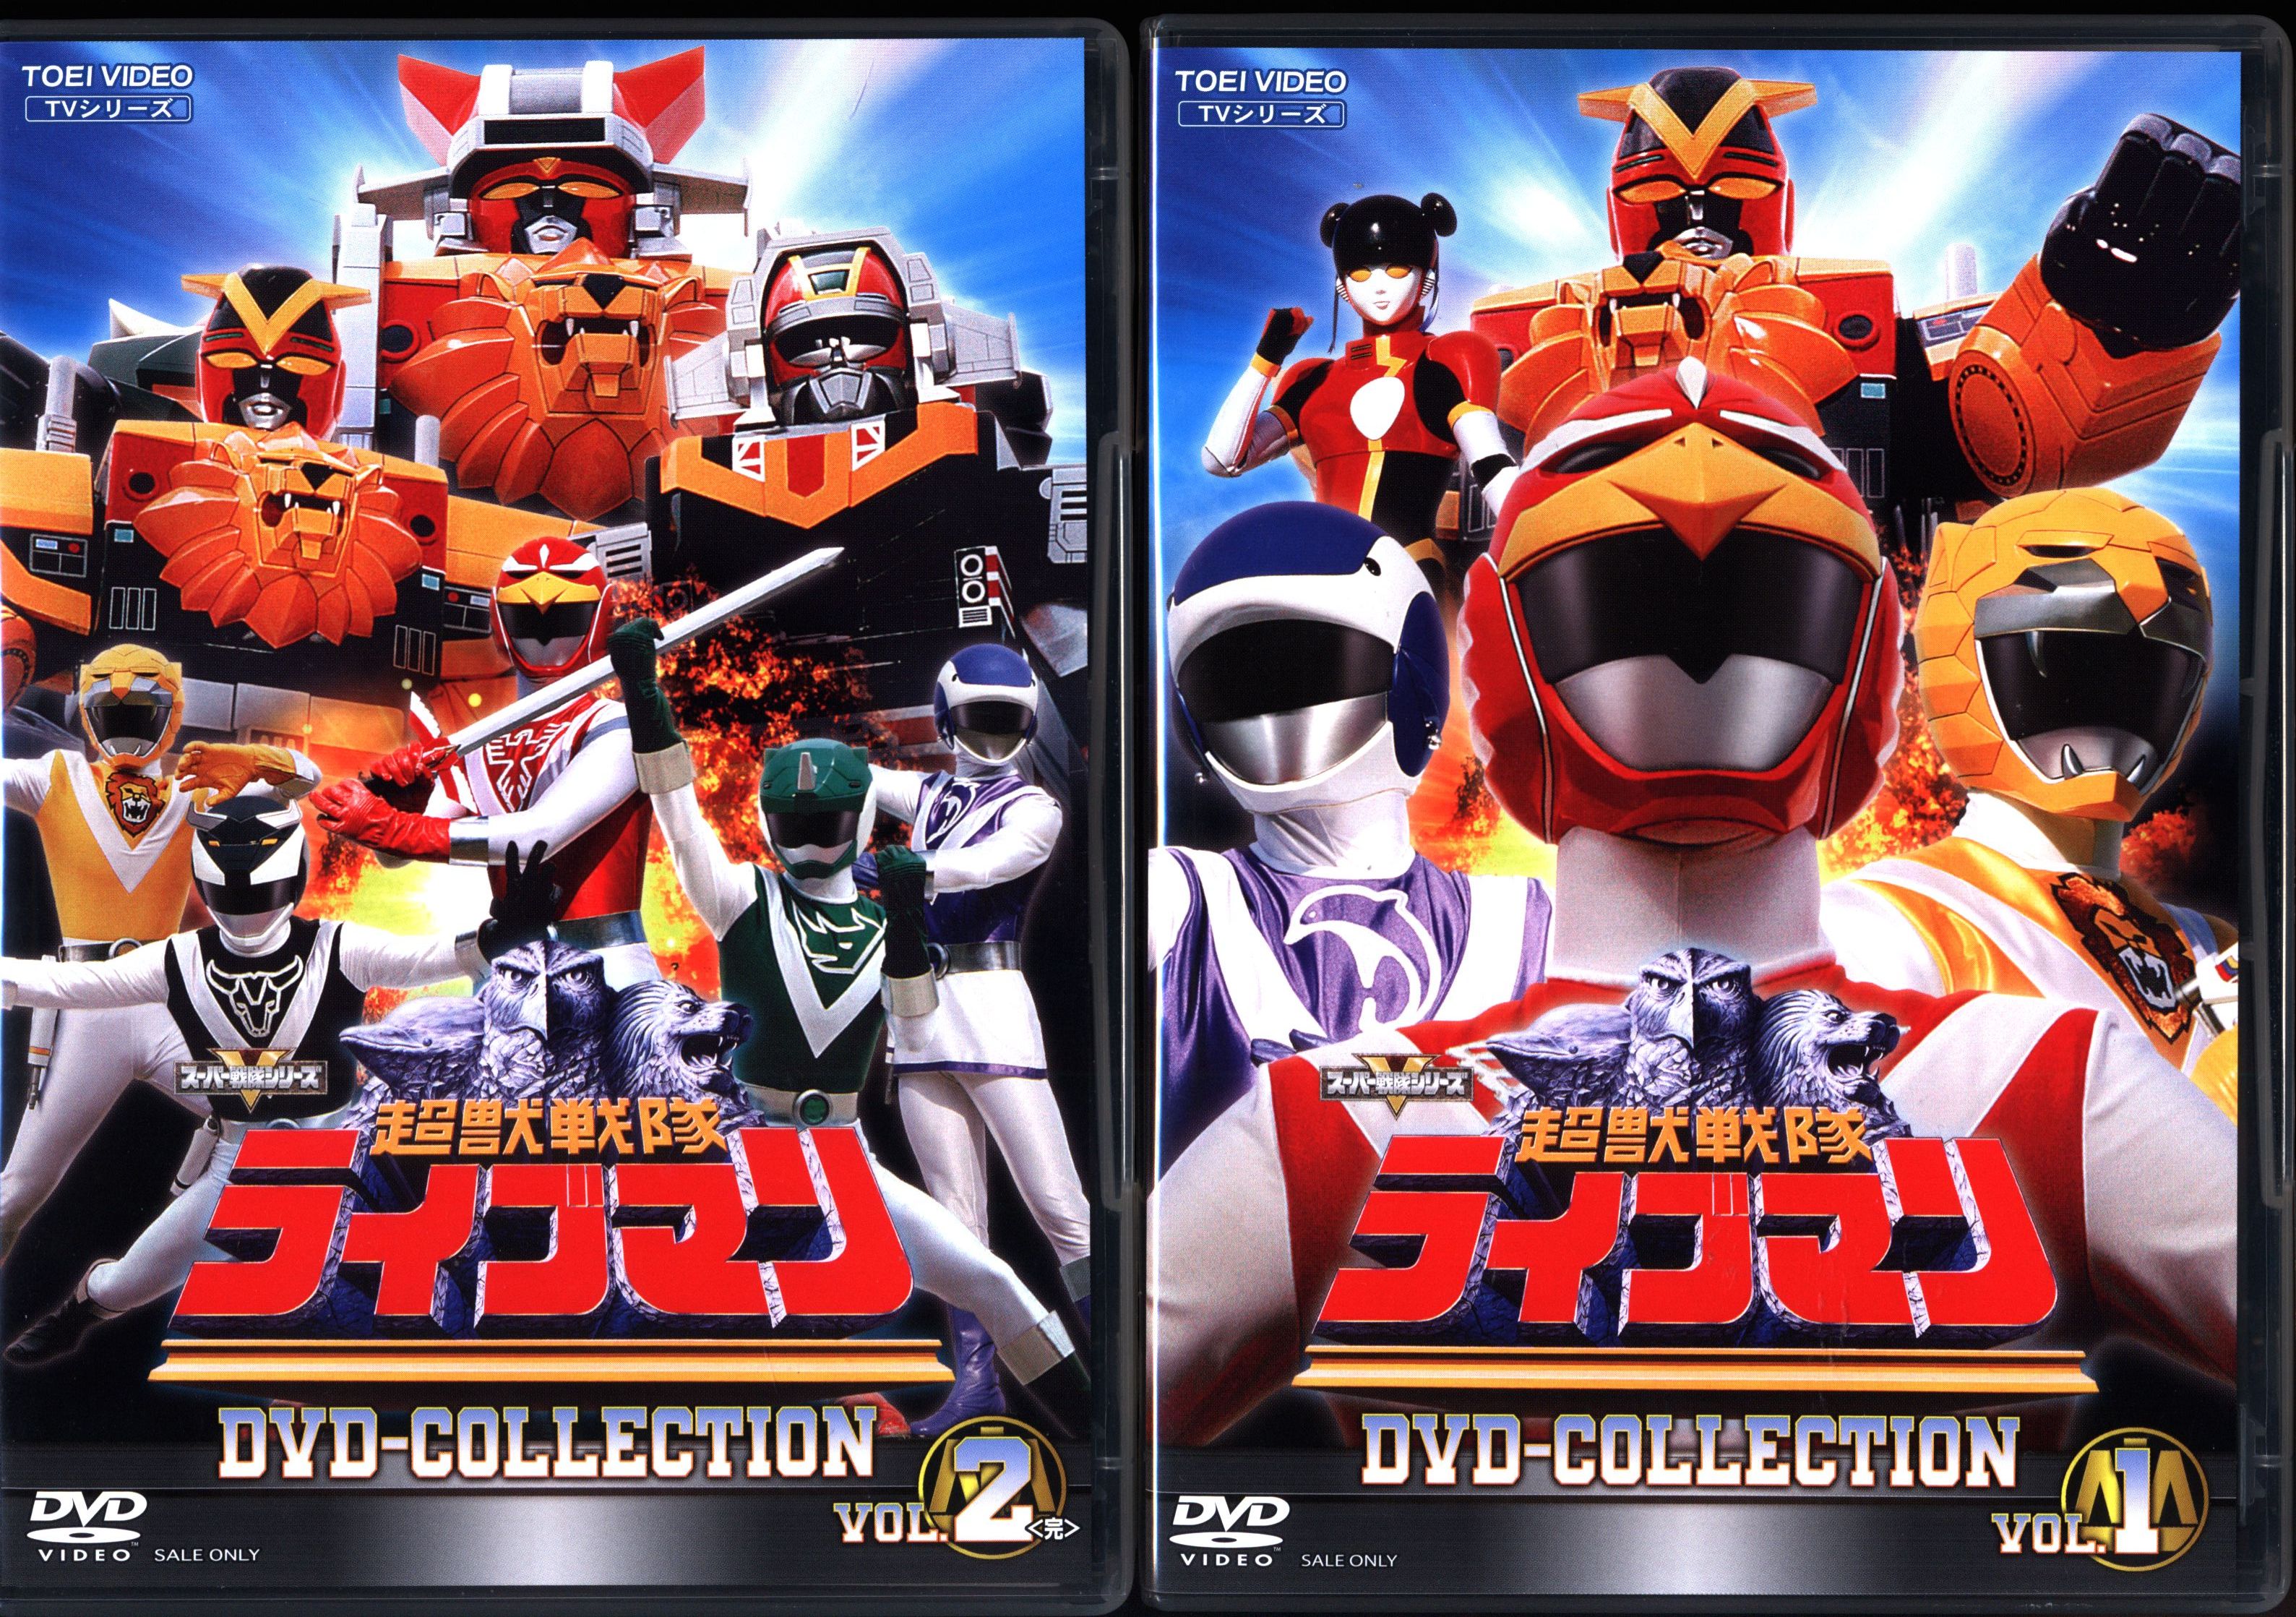 特撮DVD 超獣戦隊ライブマン DVD COLLECTION 全2BOXセット [初回版